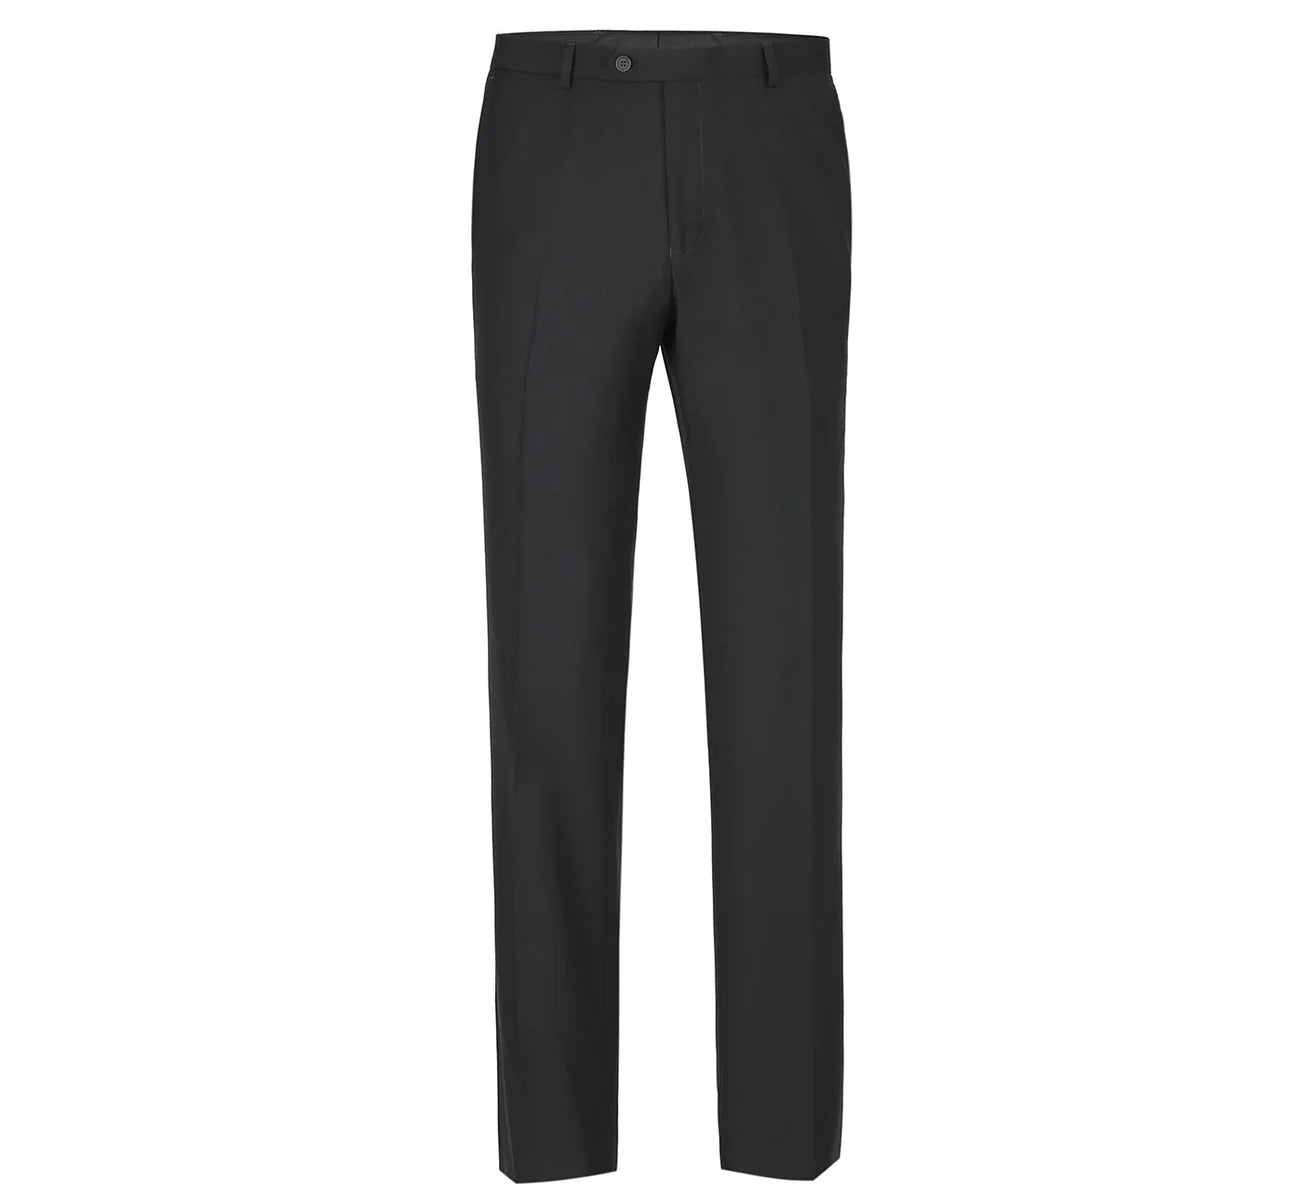 Renoir Black Slim Fit Flat Front Suit Pant